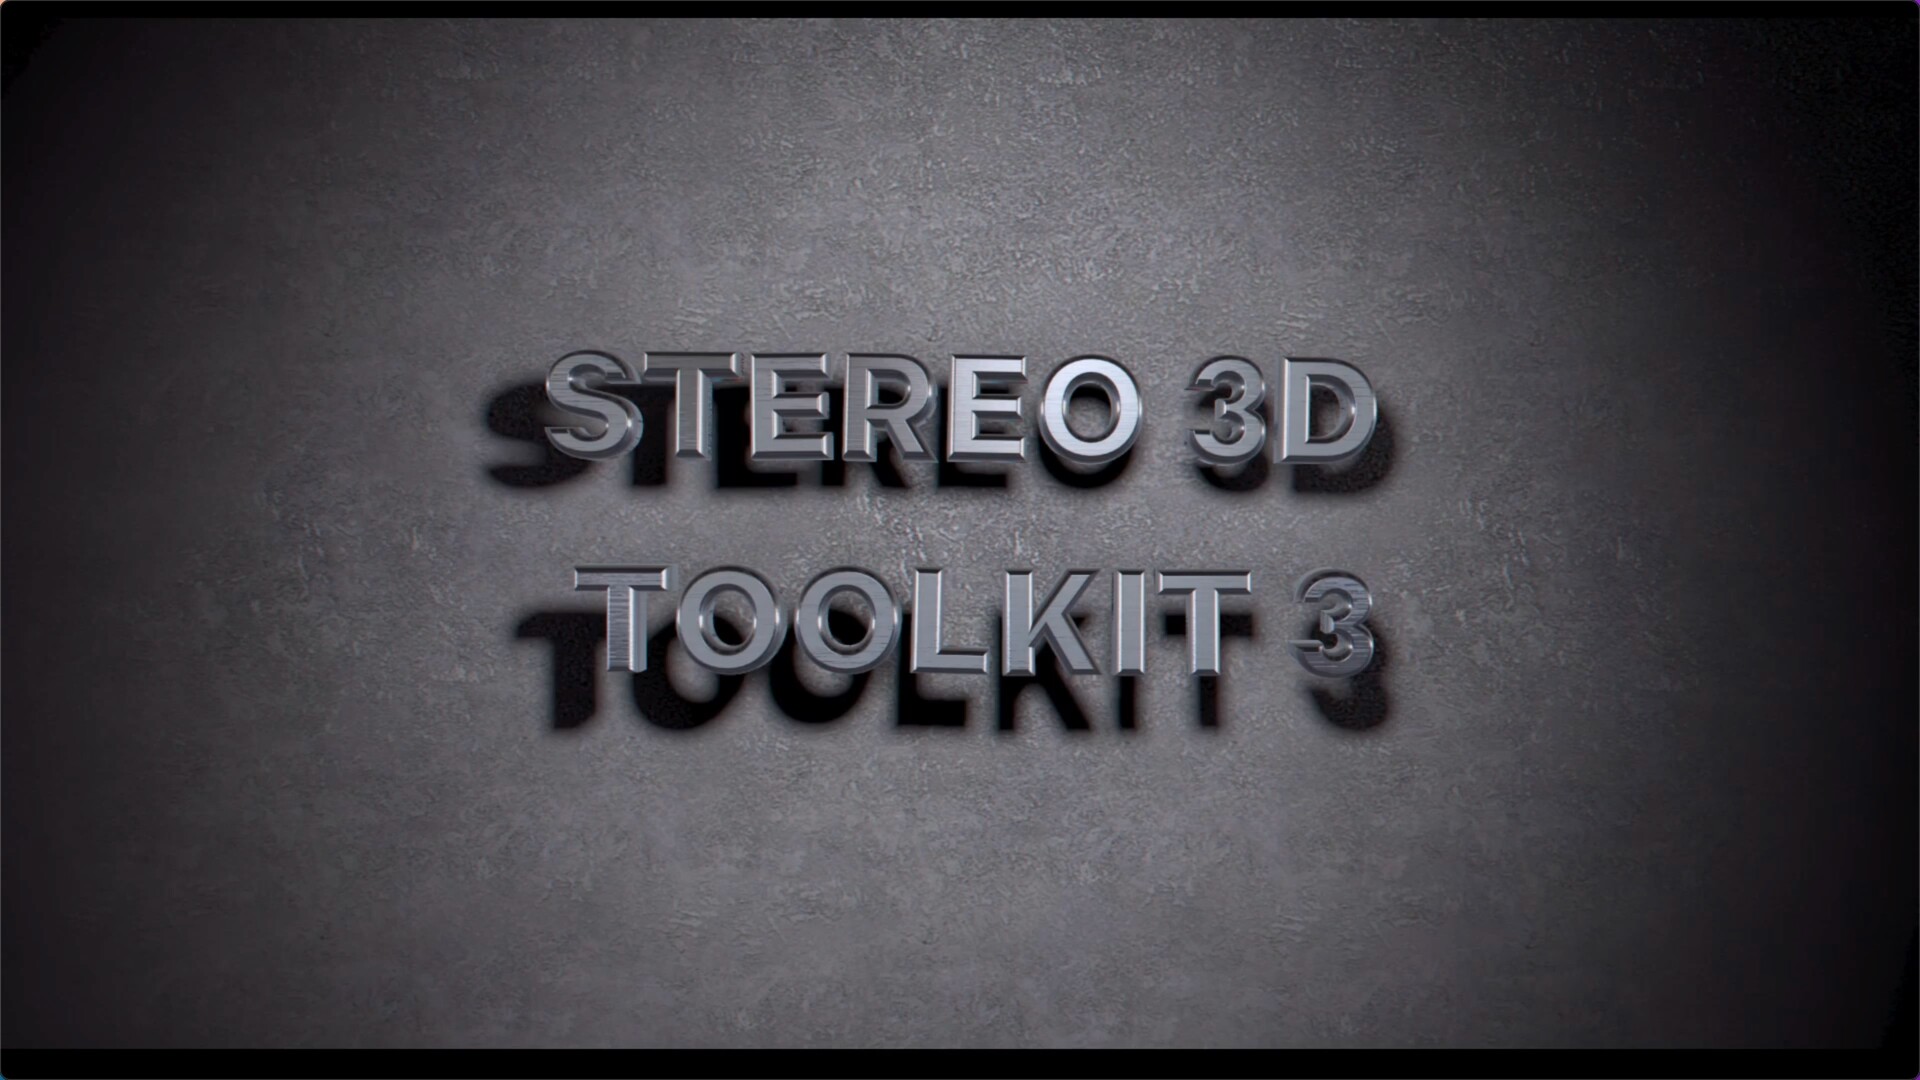 AE脚本-3D立体电影视觉特效转换工具 Stereo 3D Toolkit 